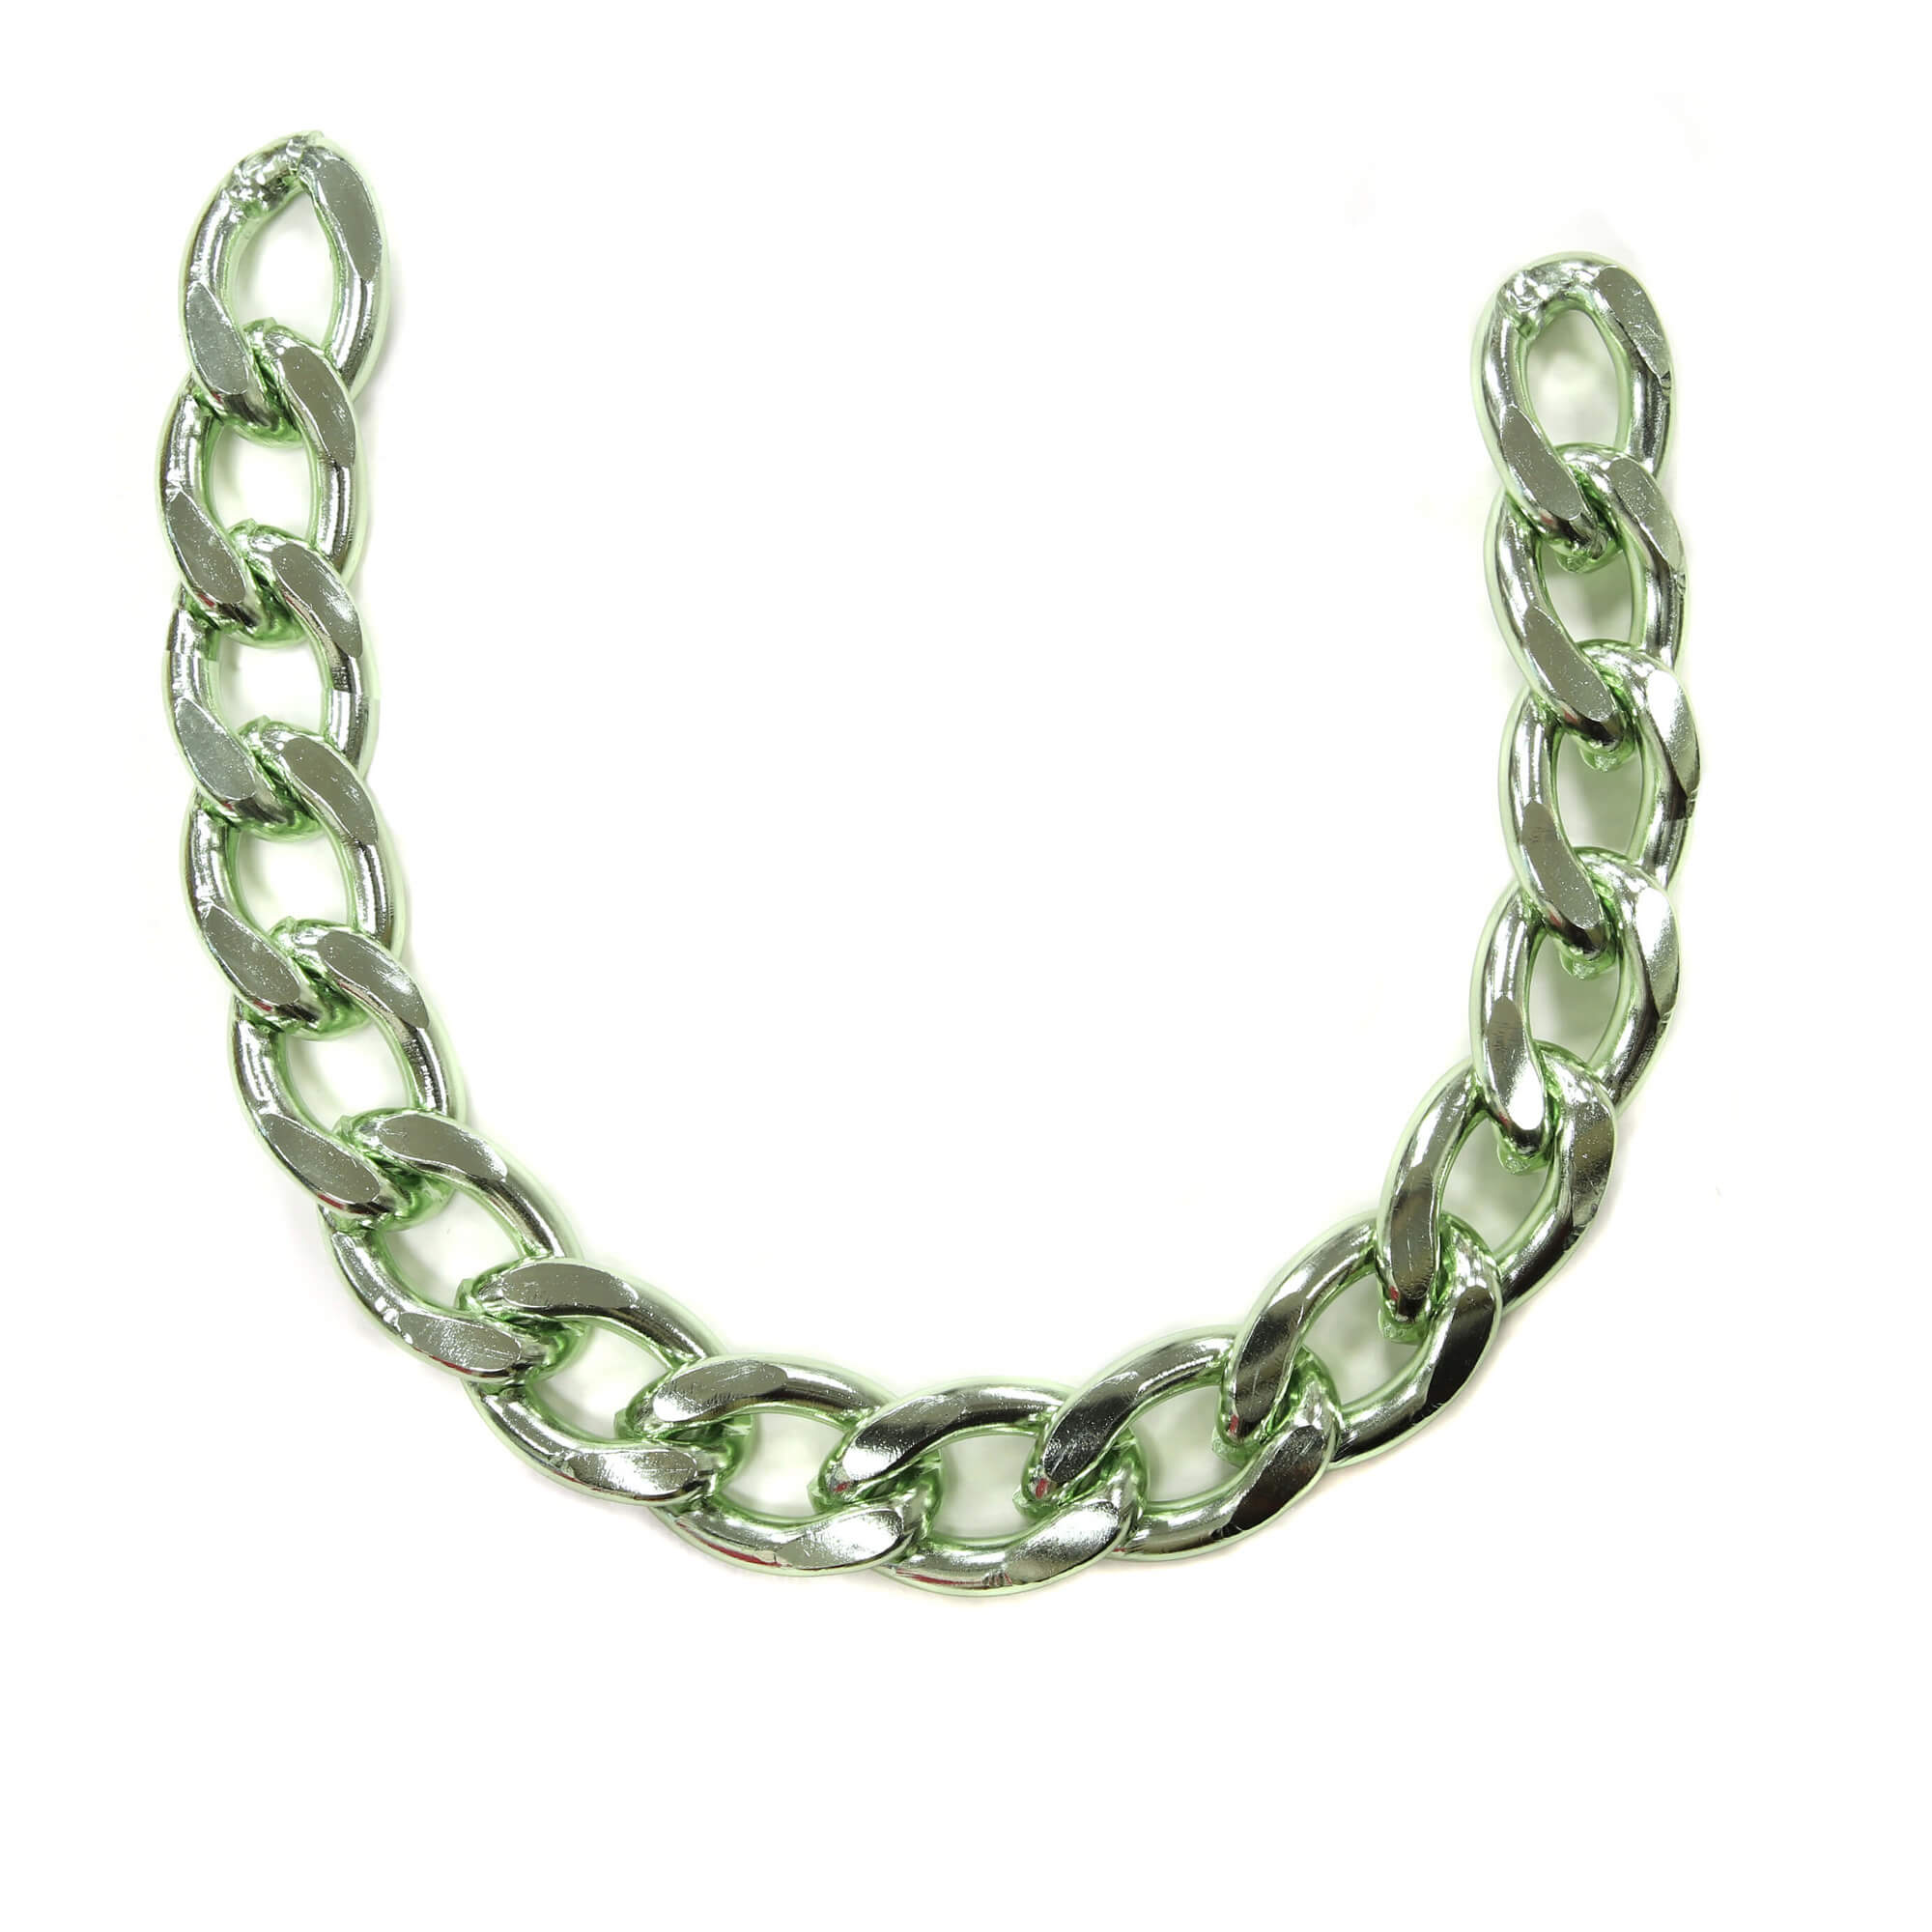 Декоративная цепь из металла 53 см, цвет Зеленый